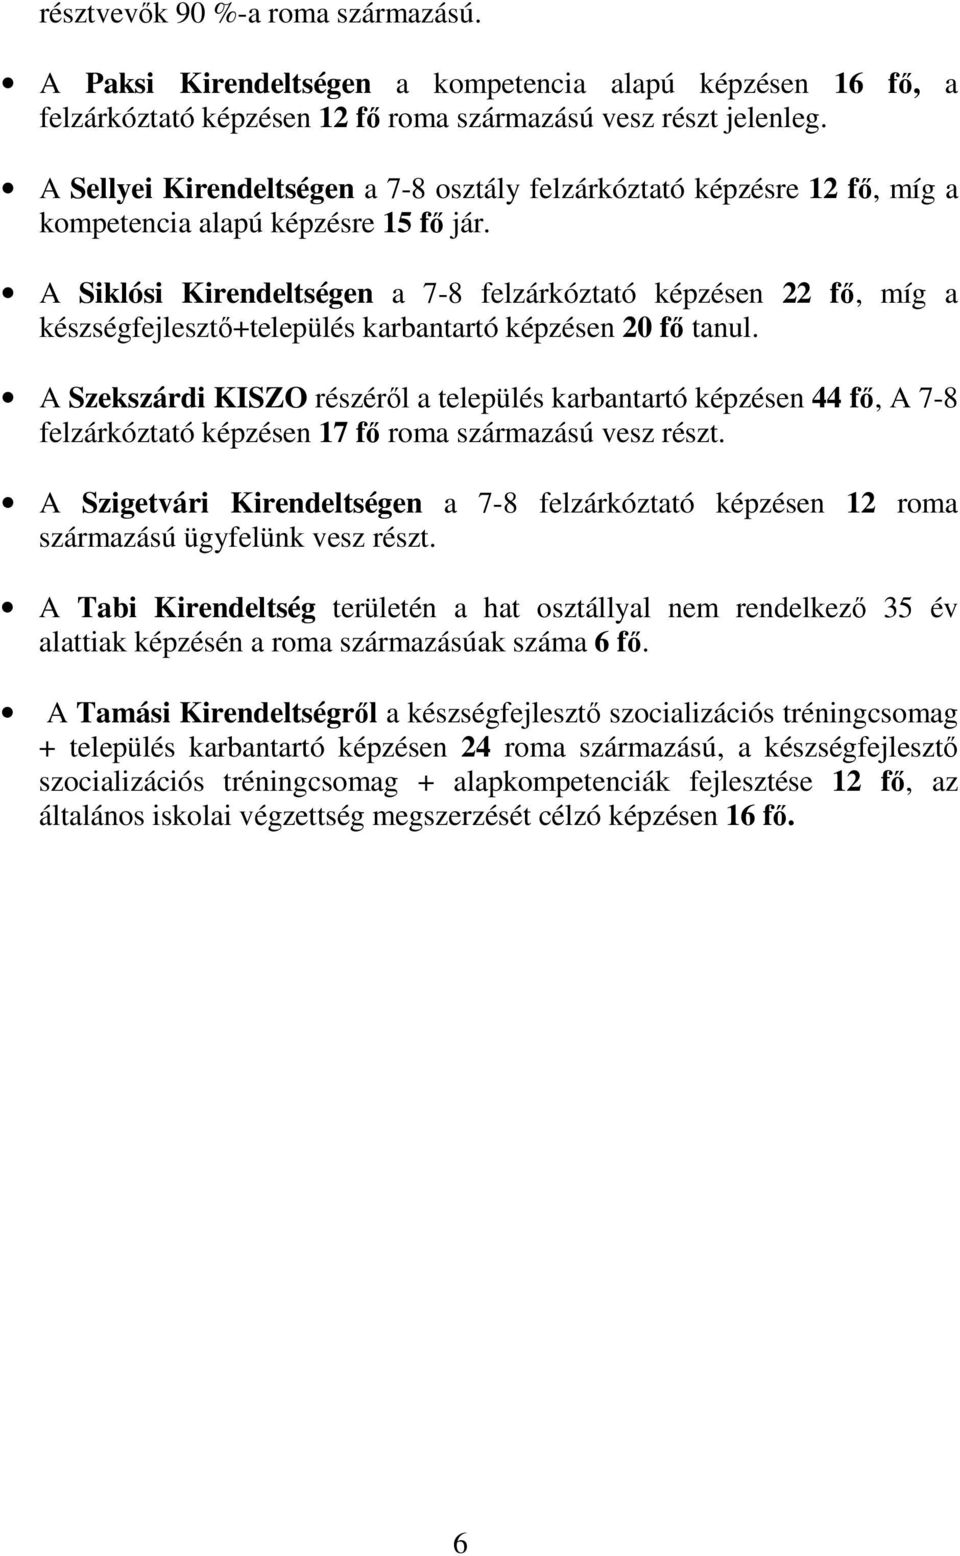 A Siklósi Kirendeltségen a 7-8 felzárkóztató képzésen 22 fı, míg a készségfejlesztı+település karbantartó képzésen 20 fı tanul.